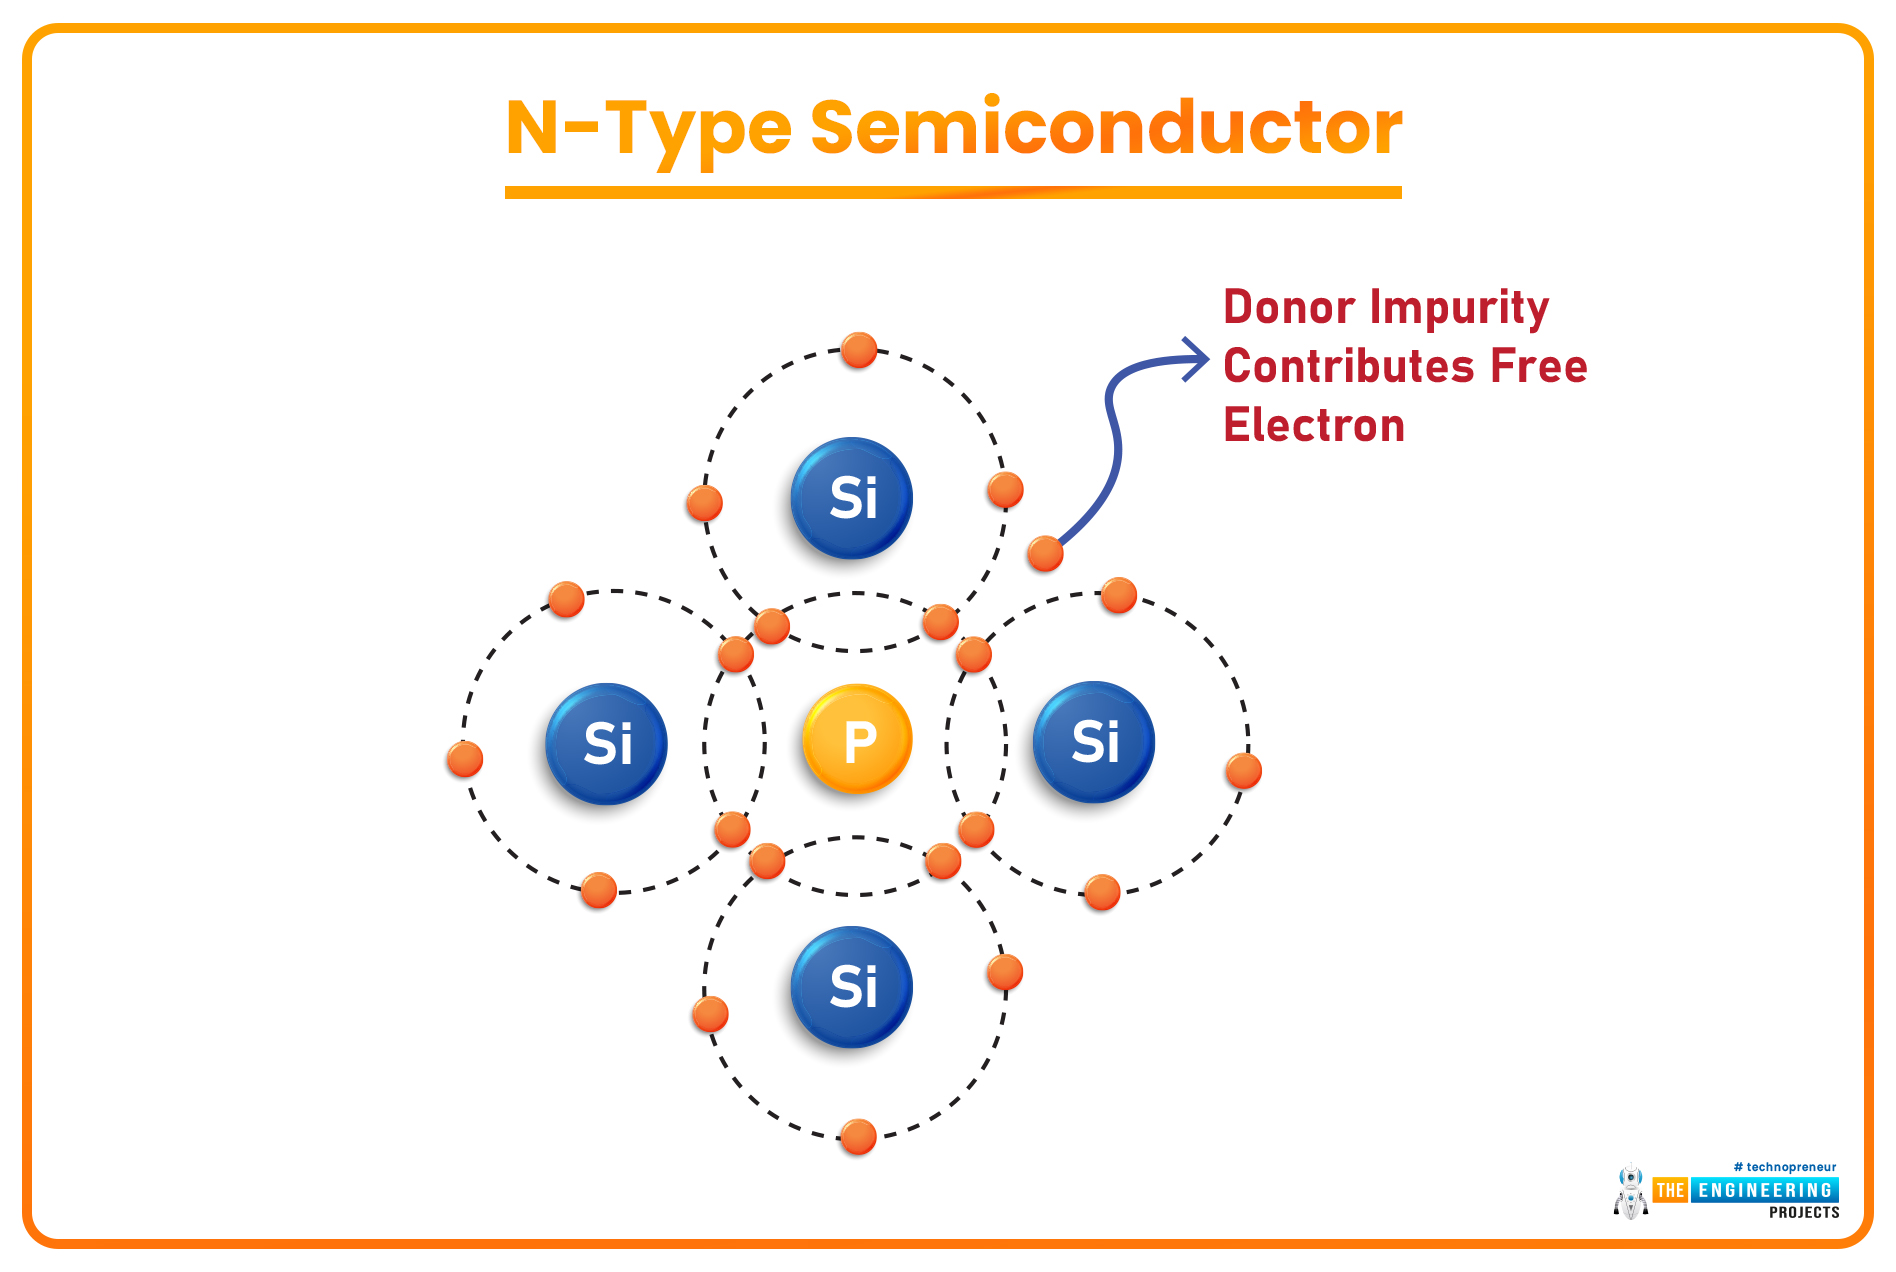 Extrinsic Semiconductor, Extrinsic Semiconductor model, n type semiconductor, p type semiconductor, intrinsic semiconductor